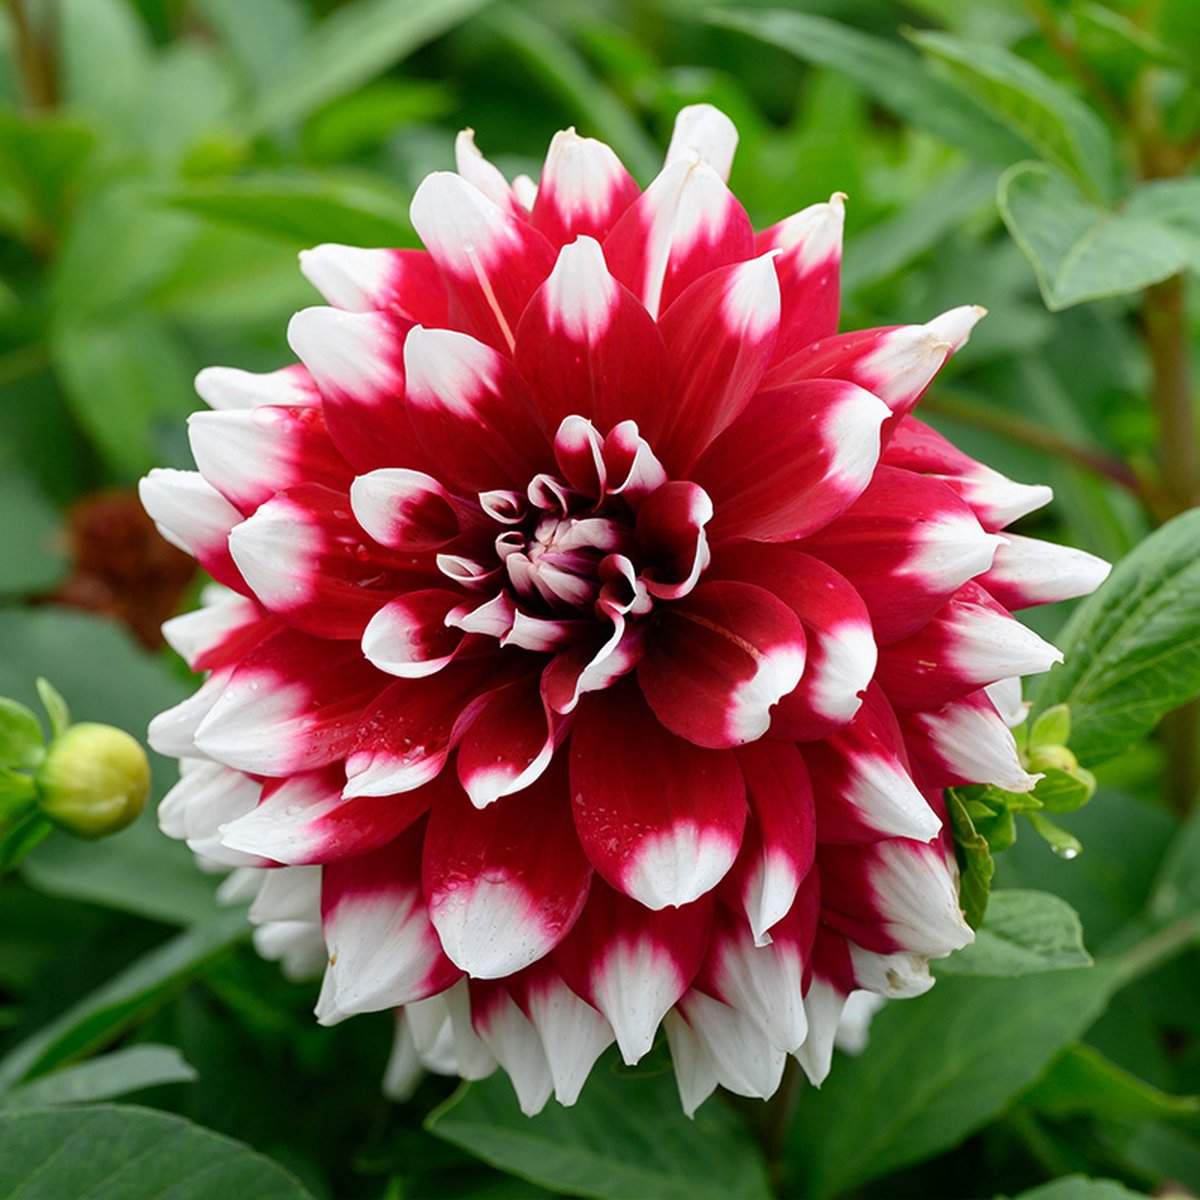 Dahlia Mystery Day | 1 stuk | Decoratieve Dahlia | Knol | Paars | Wit | Dahlia Knollen van Top Kwaliteit | 100% Bloeigarantie | QFB Gardening